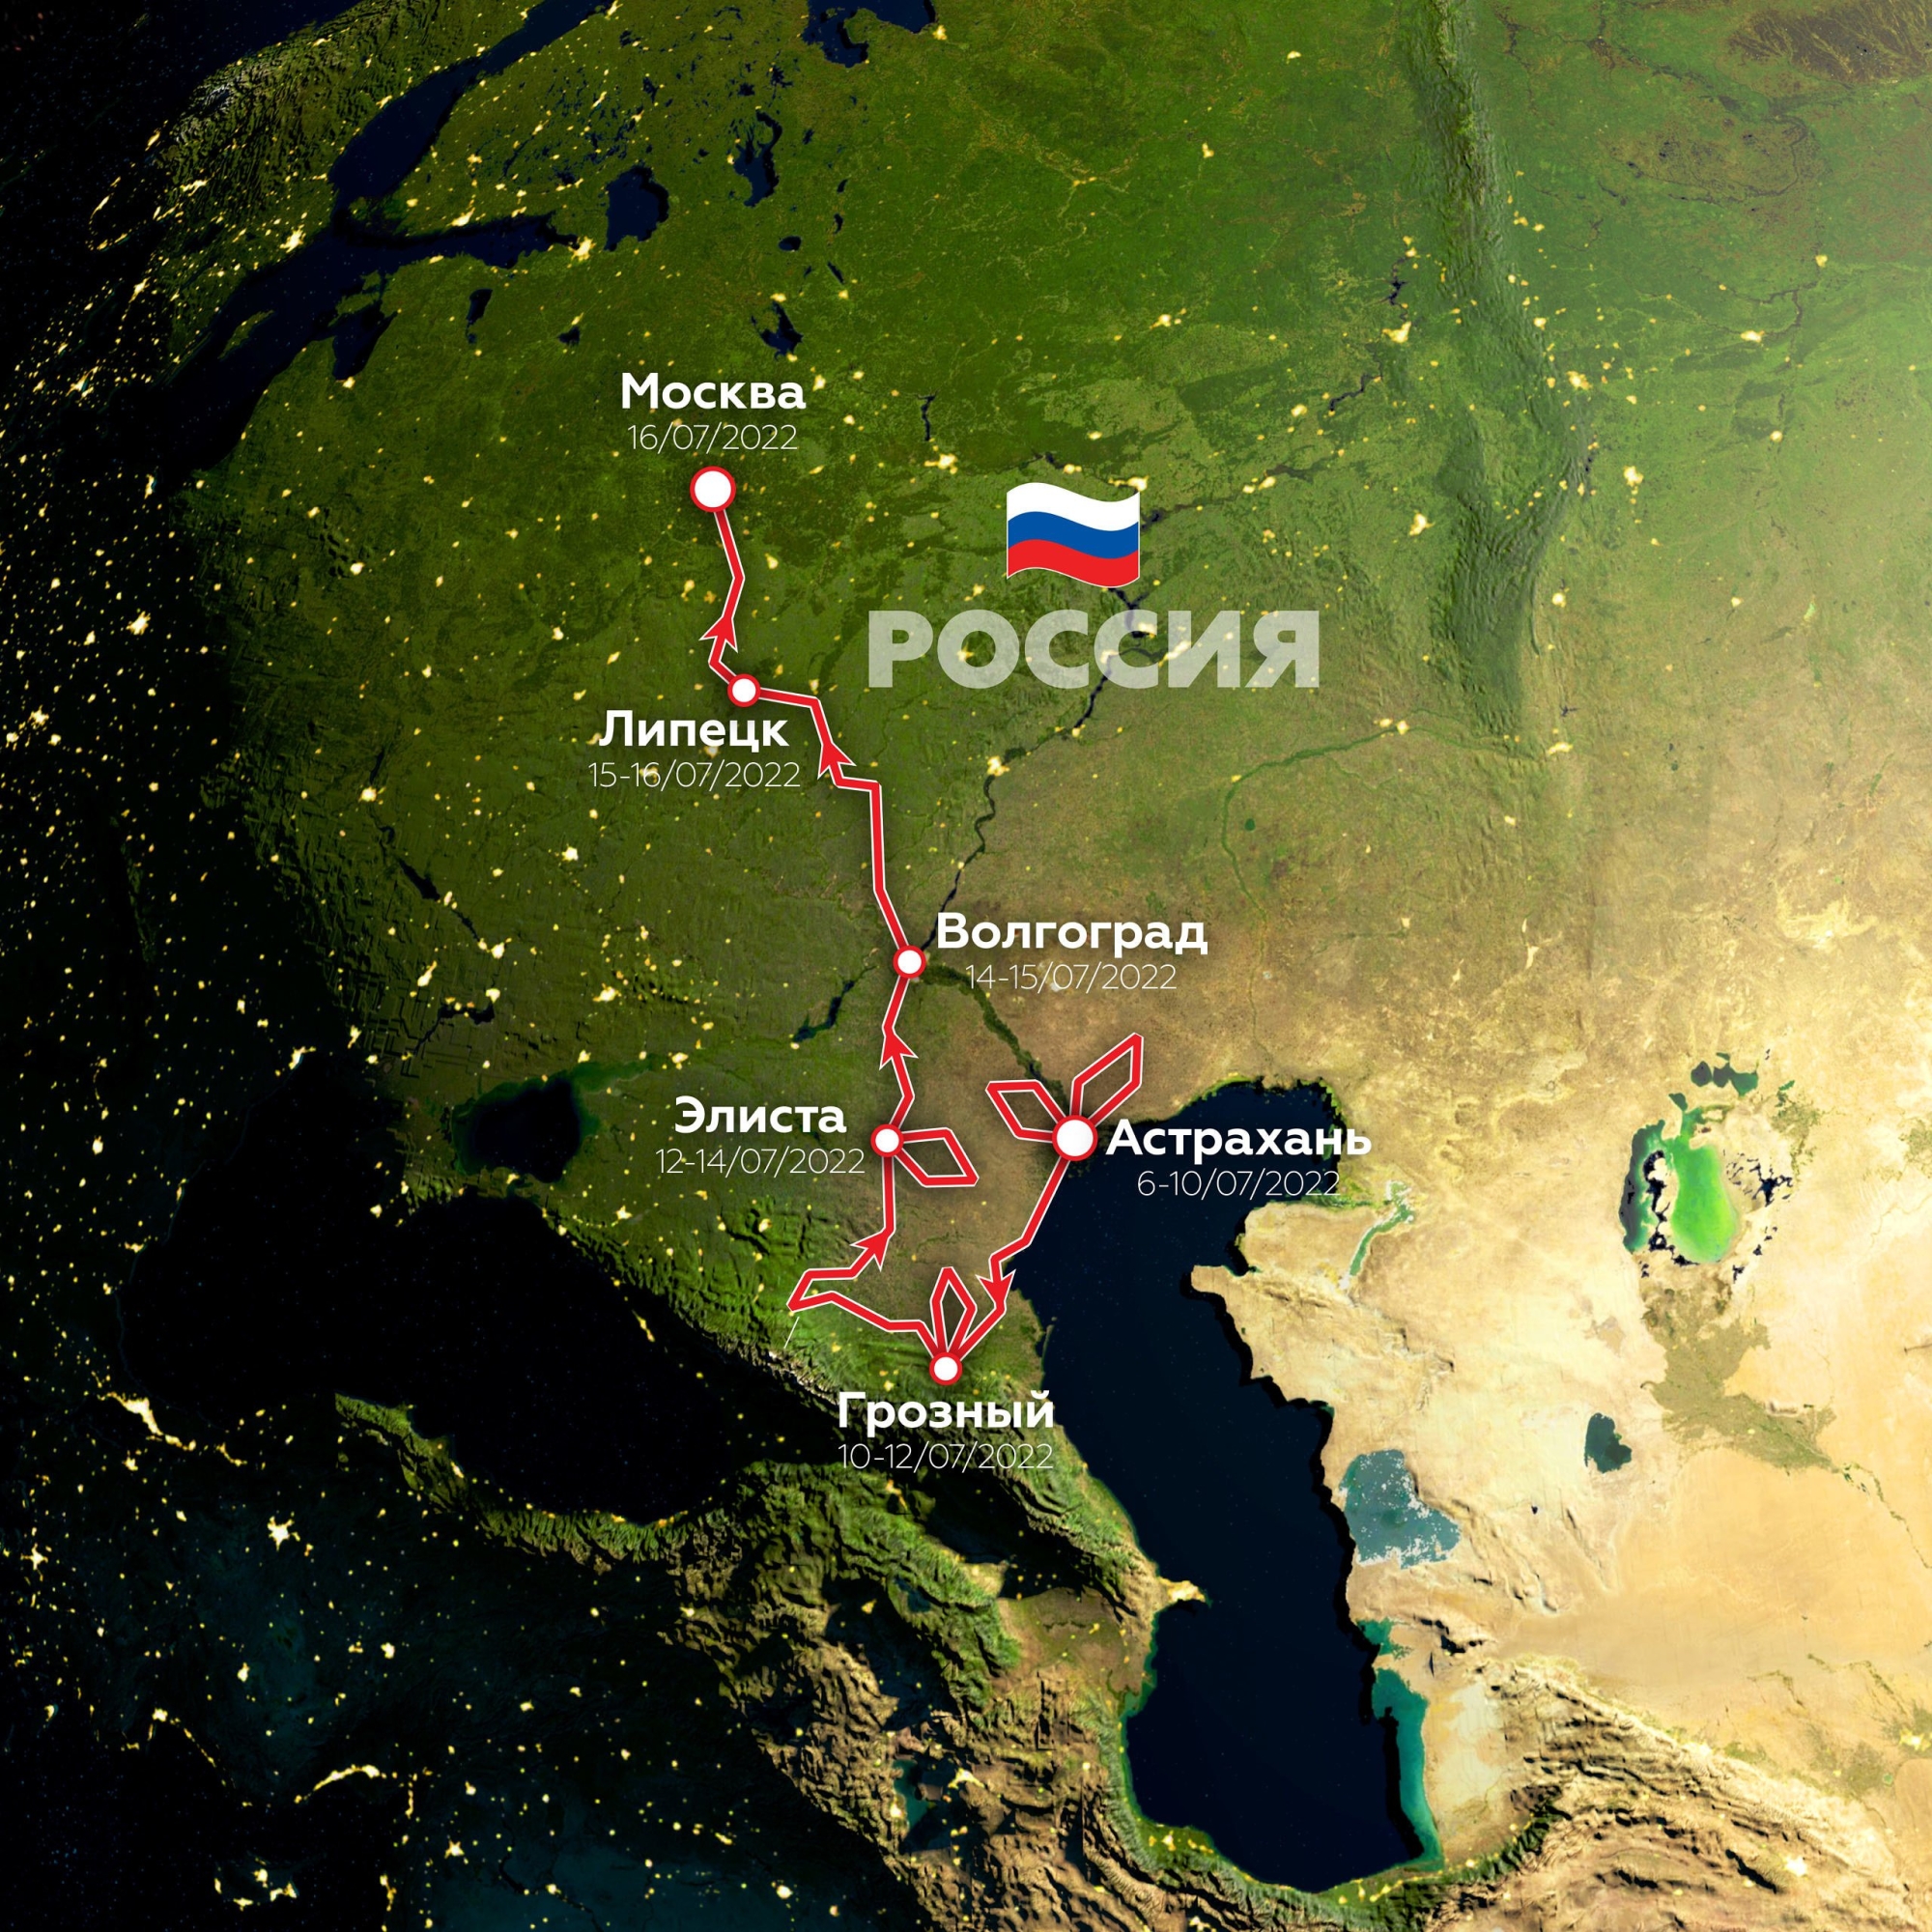 «КАМАЗ-мастер» готовится к ралли «Шелковый путь-2022»